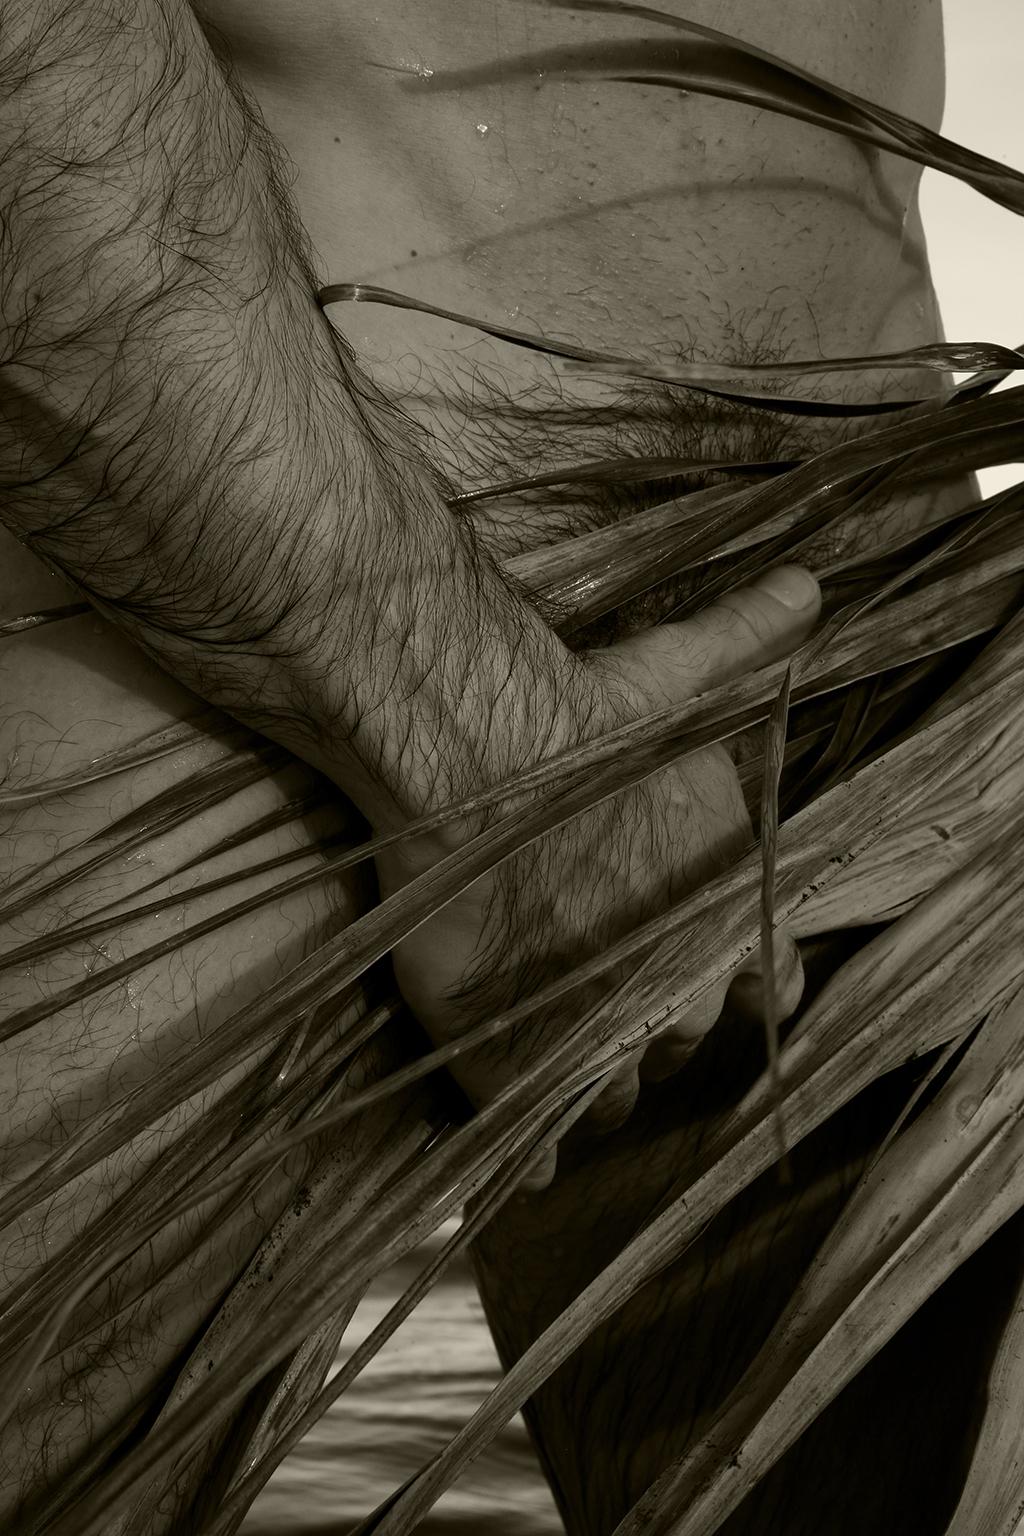 Ricky Cohete Black and White Photograph – Handfläche, 2. Sepia. Nackt. Limitierte Auflage einer Photographie